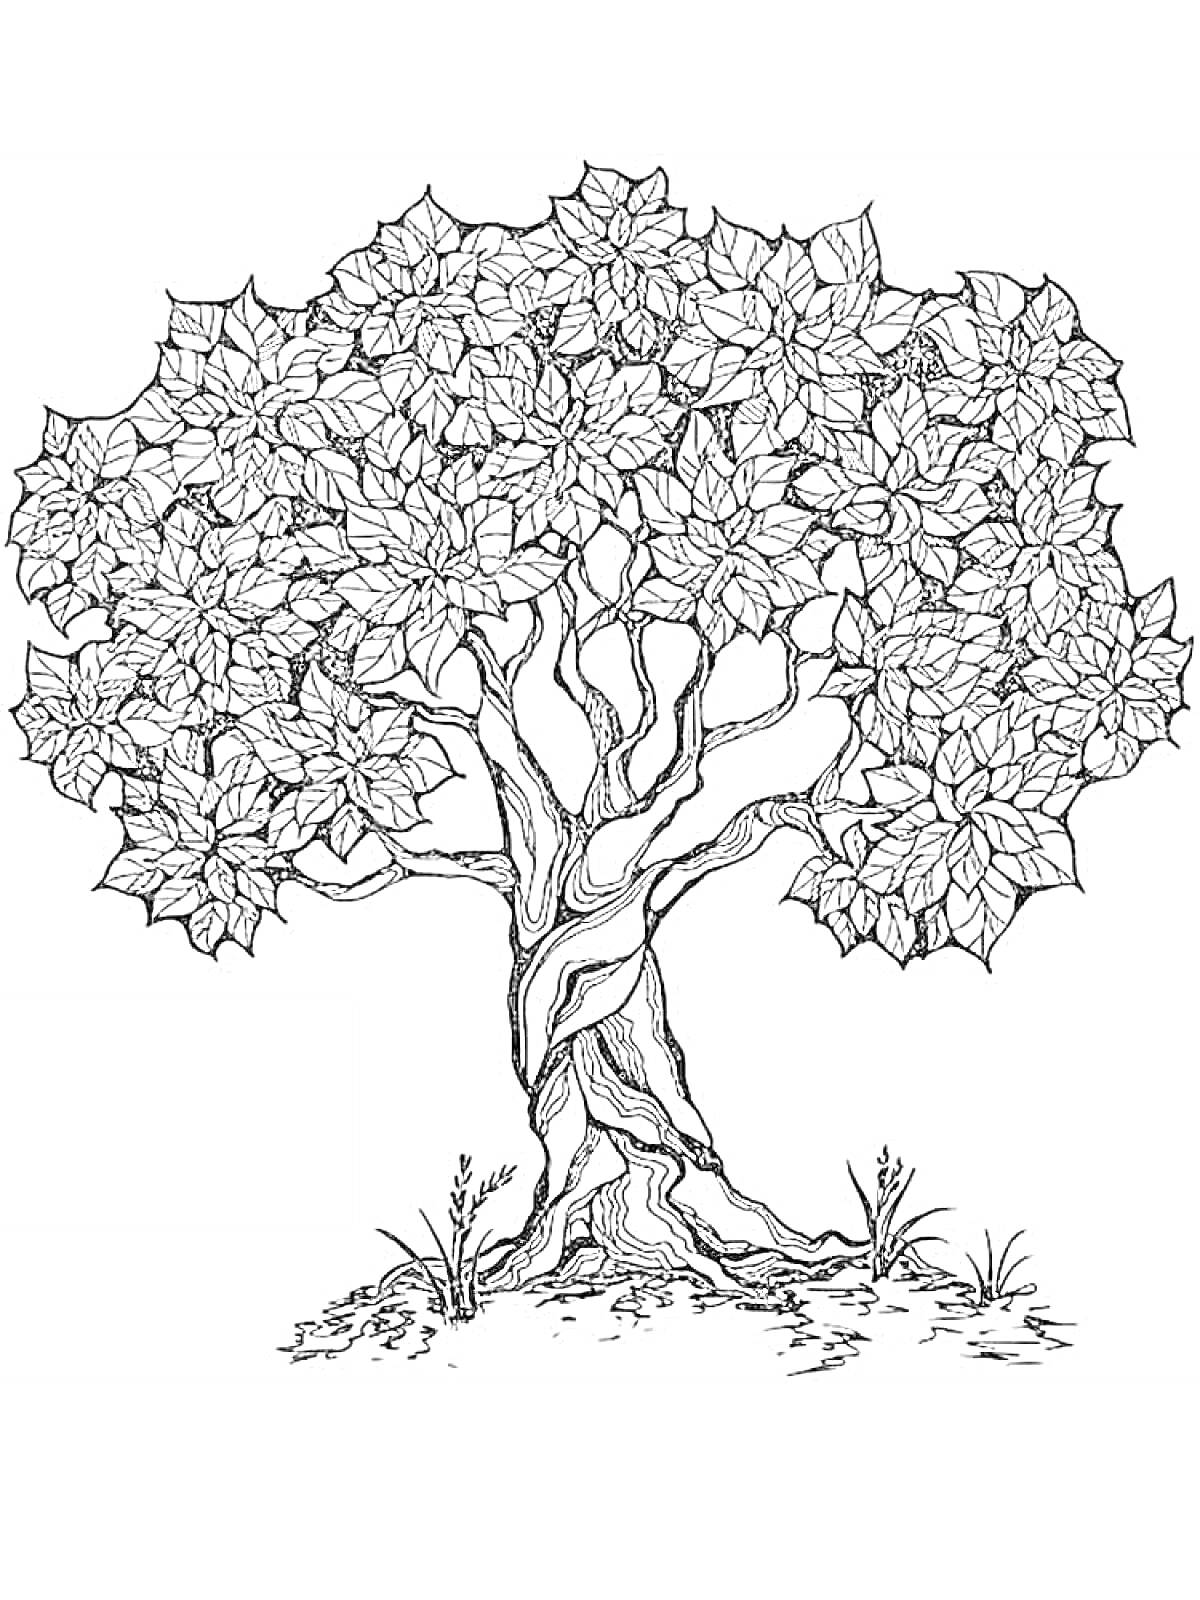 Раскраска Антистресс раскраска с детализированным деревом, включающим переплетенные ветви, листву и траву у корней